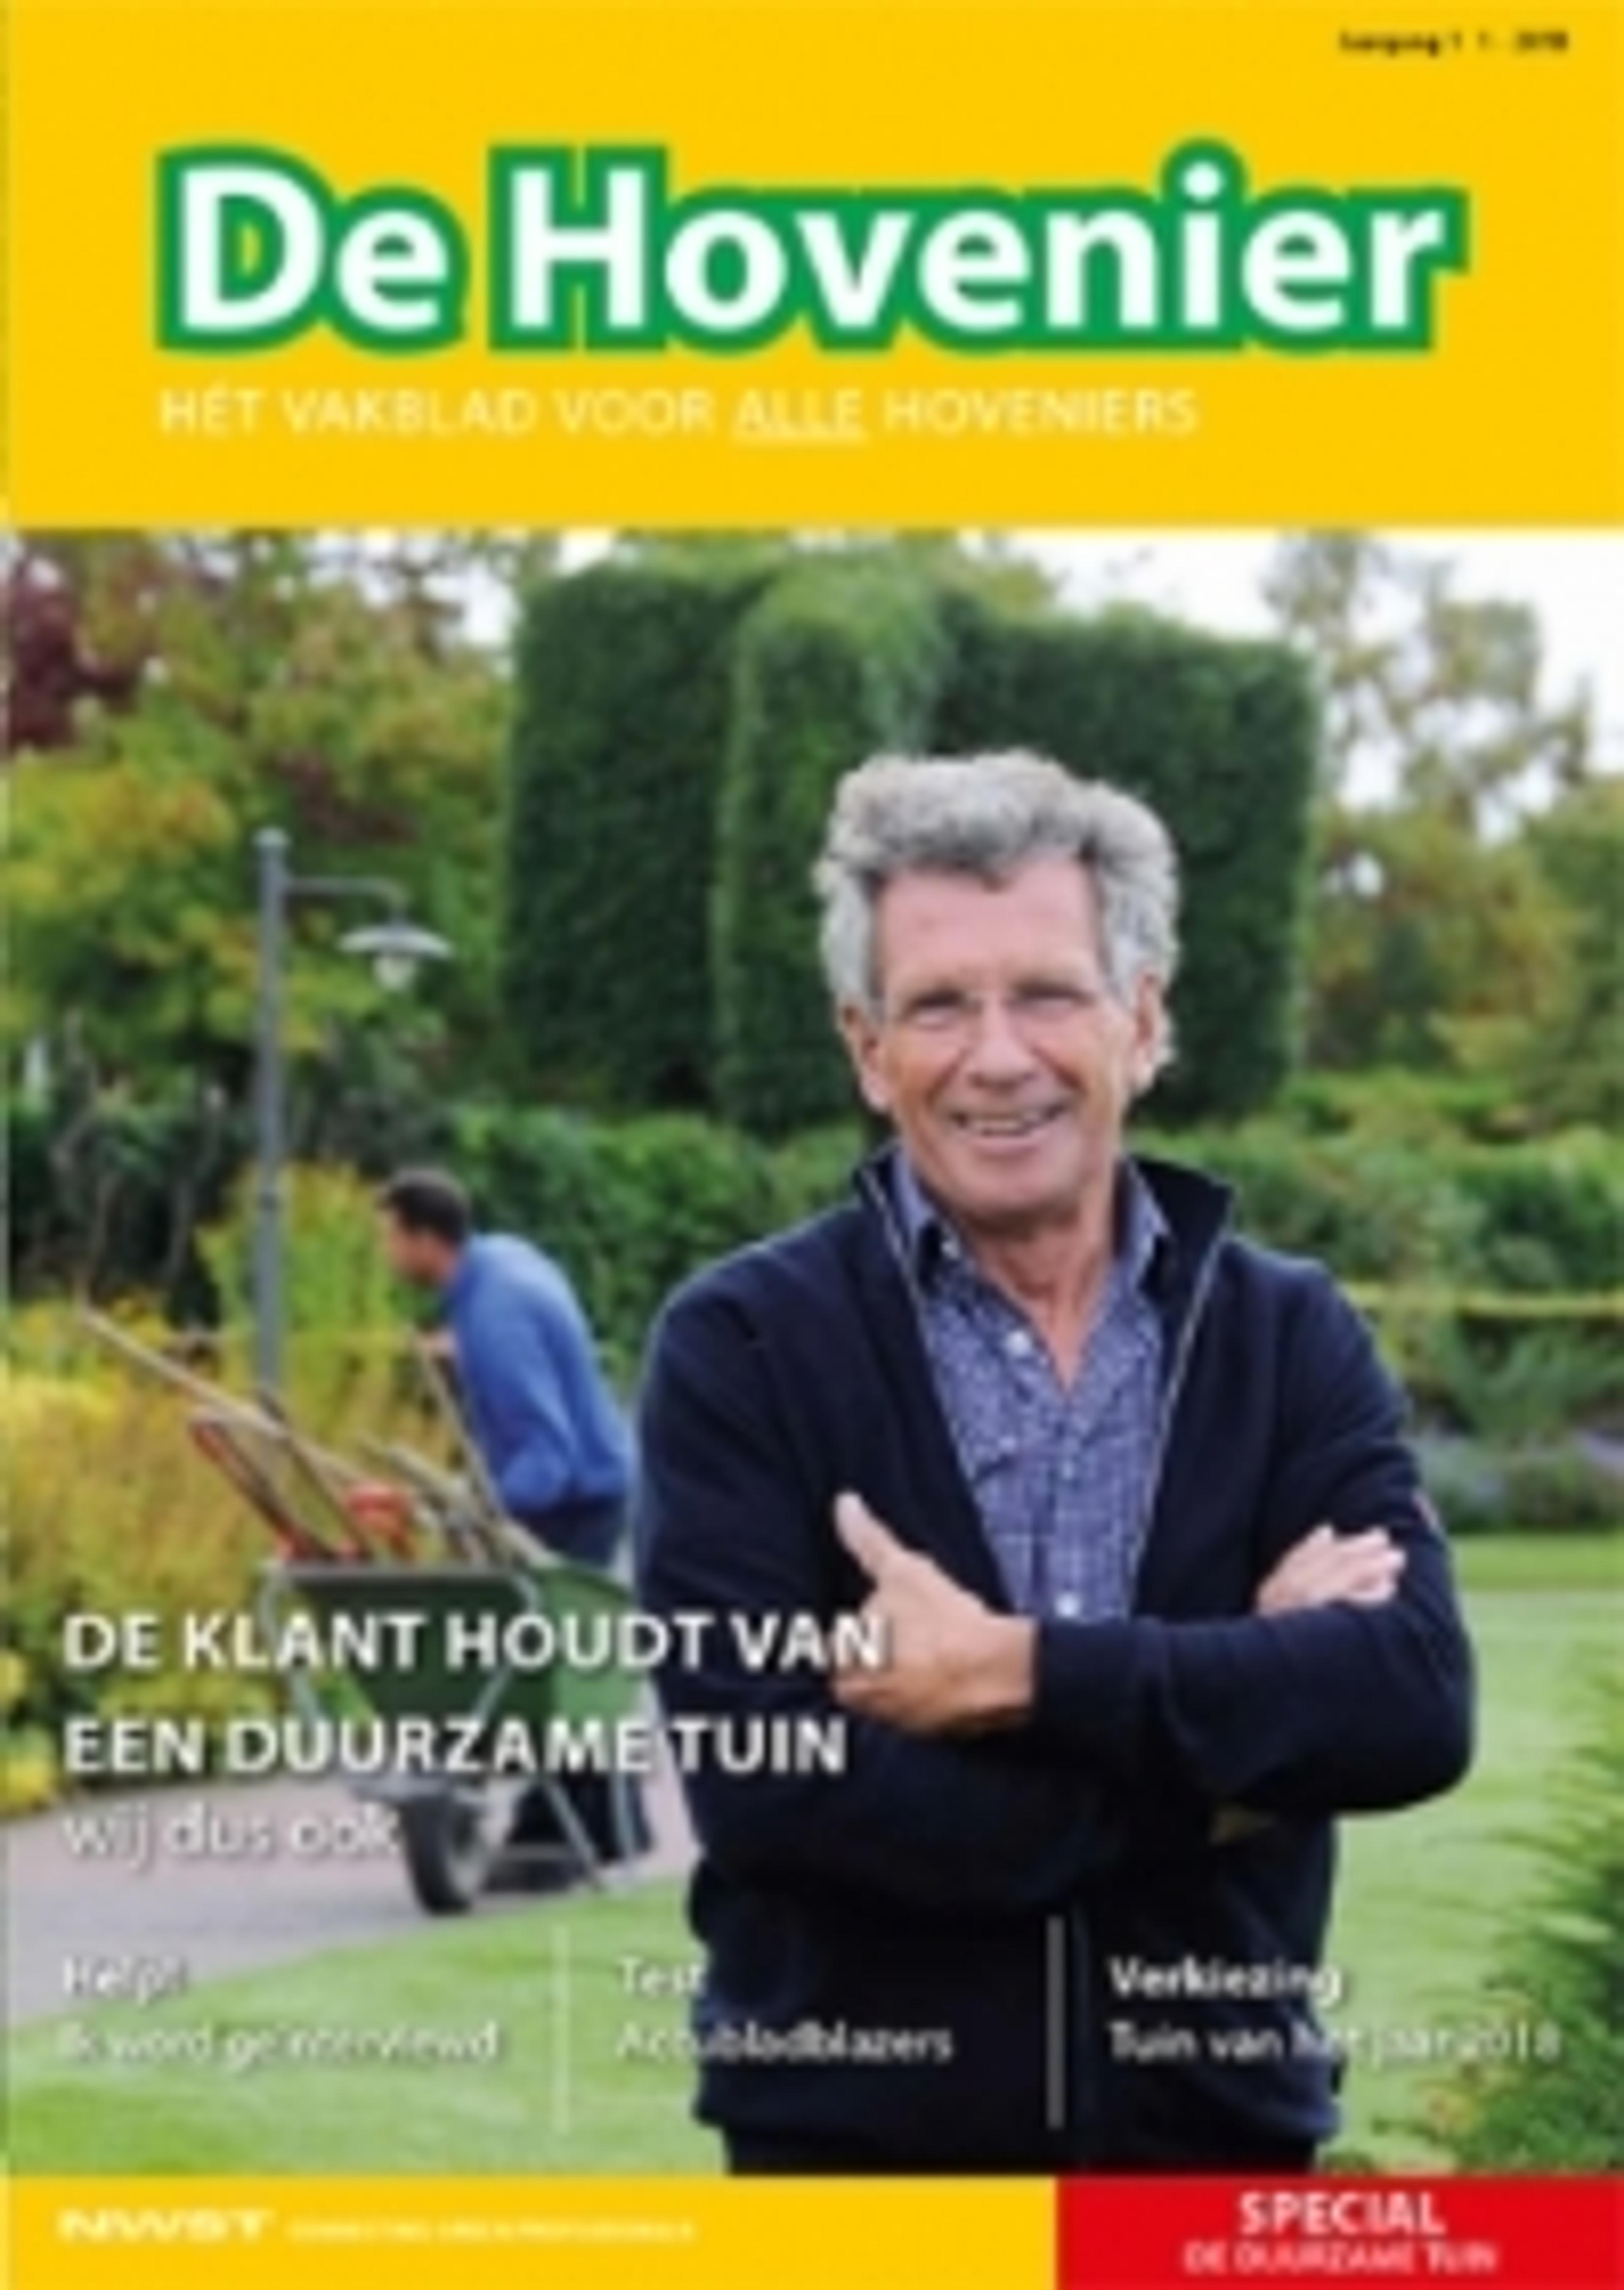 Vakblad De Hovenier van NWST NeWSTories